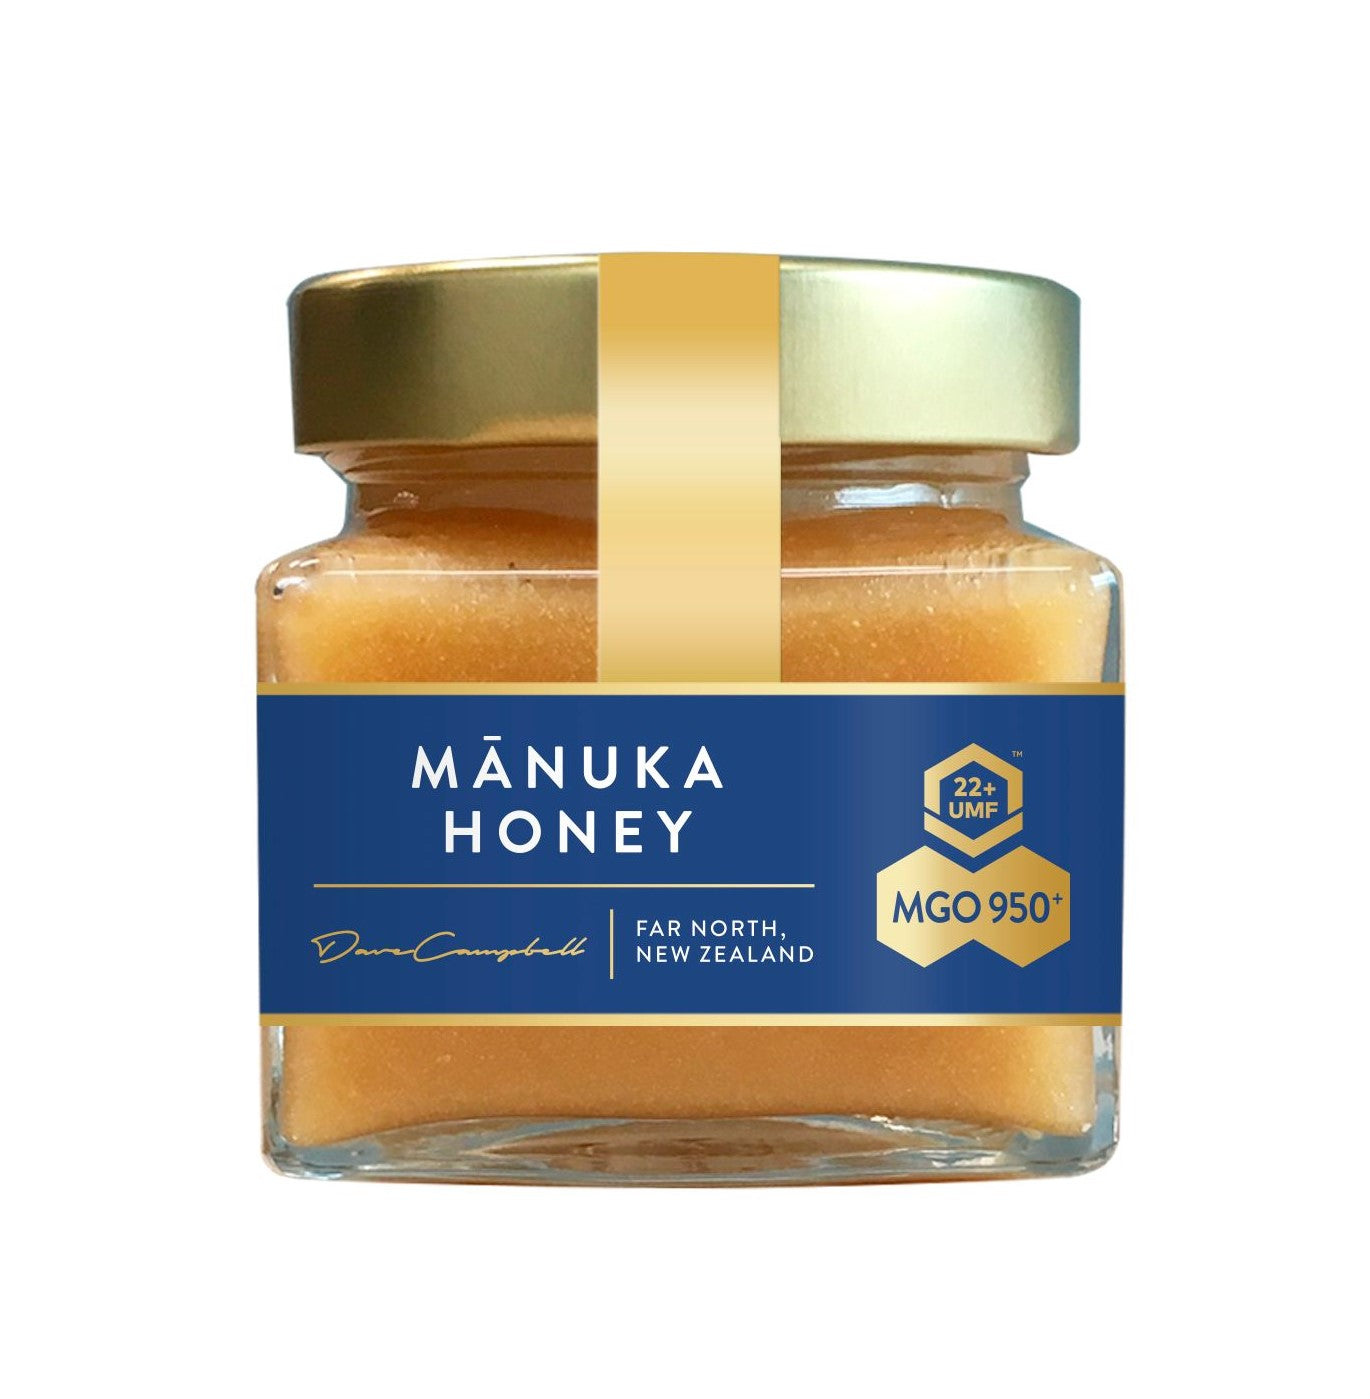 MGO 950+ Manuka Honey - Limited Release - Manuka Honey | Manuka Health